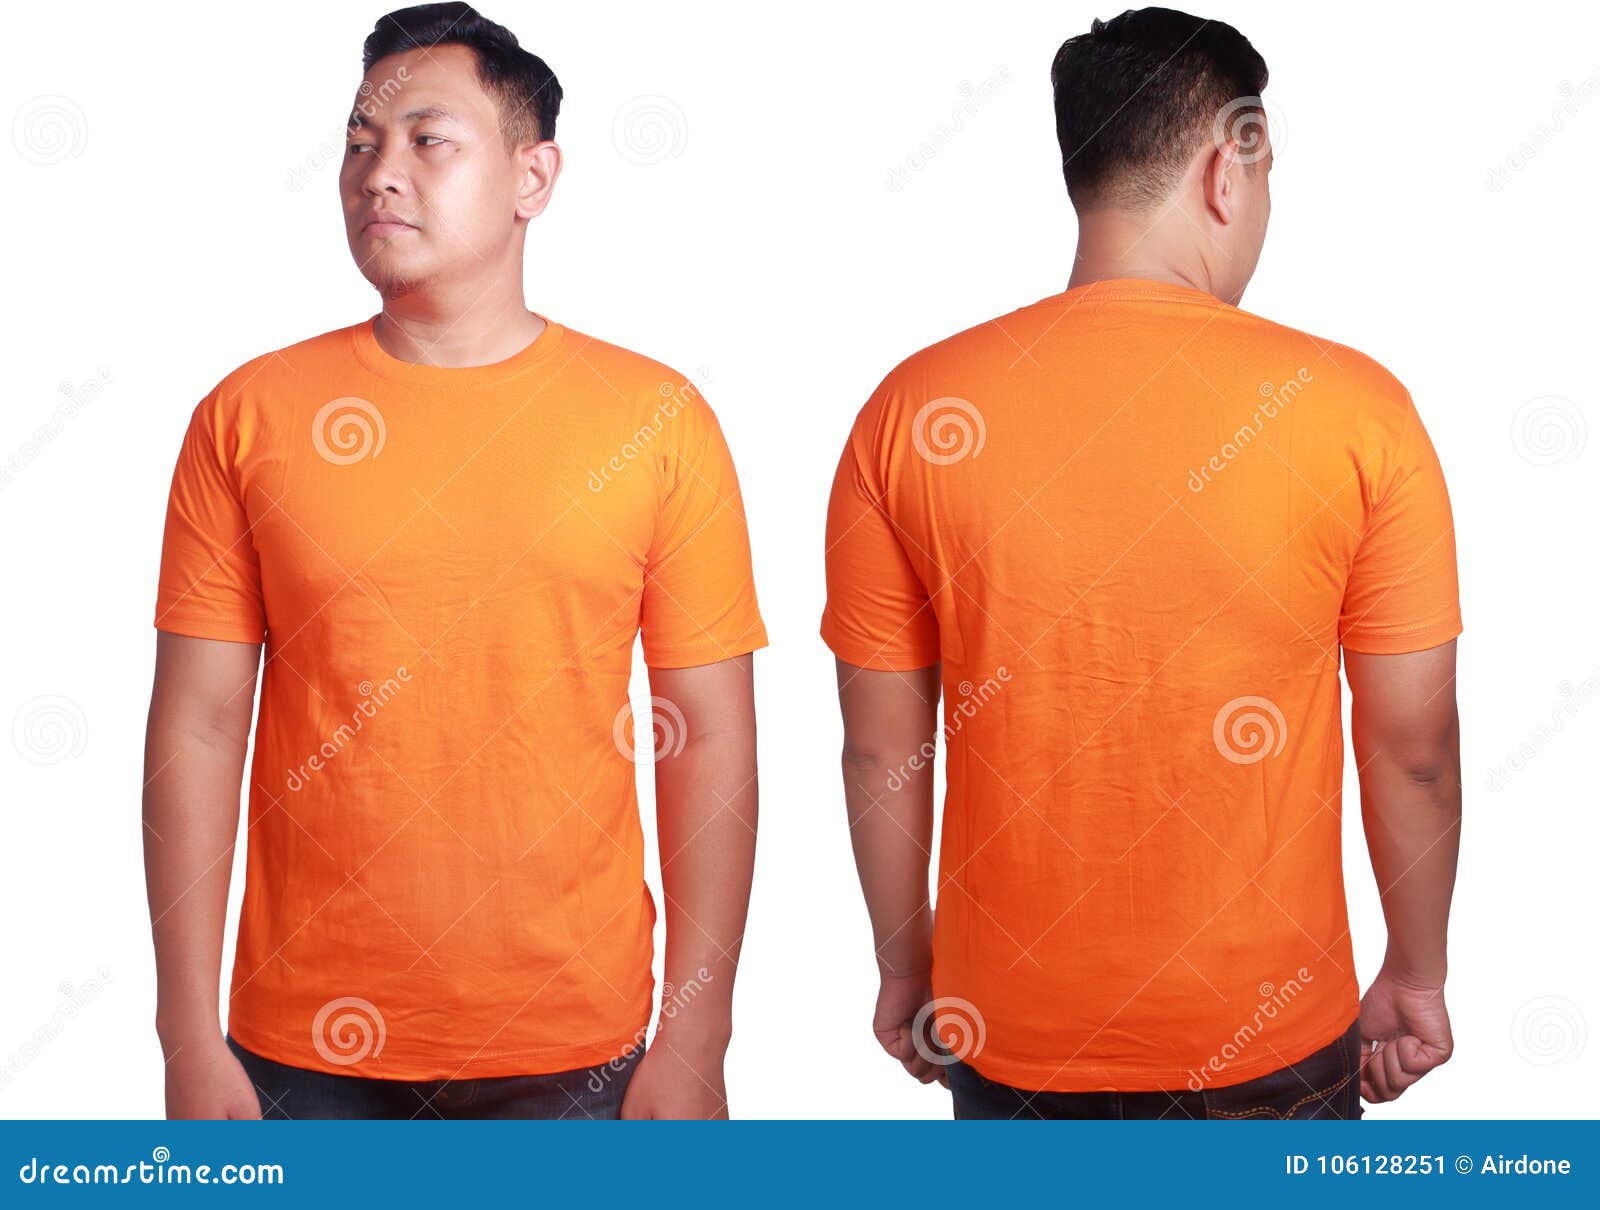 Camisa Laranja Zombando Frente E Verso Isolada. Camisa Laranja Comum.  Modelo De Design De Camisa Imagem de Stock - Imagem de camisa, projeto:  266466255